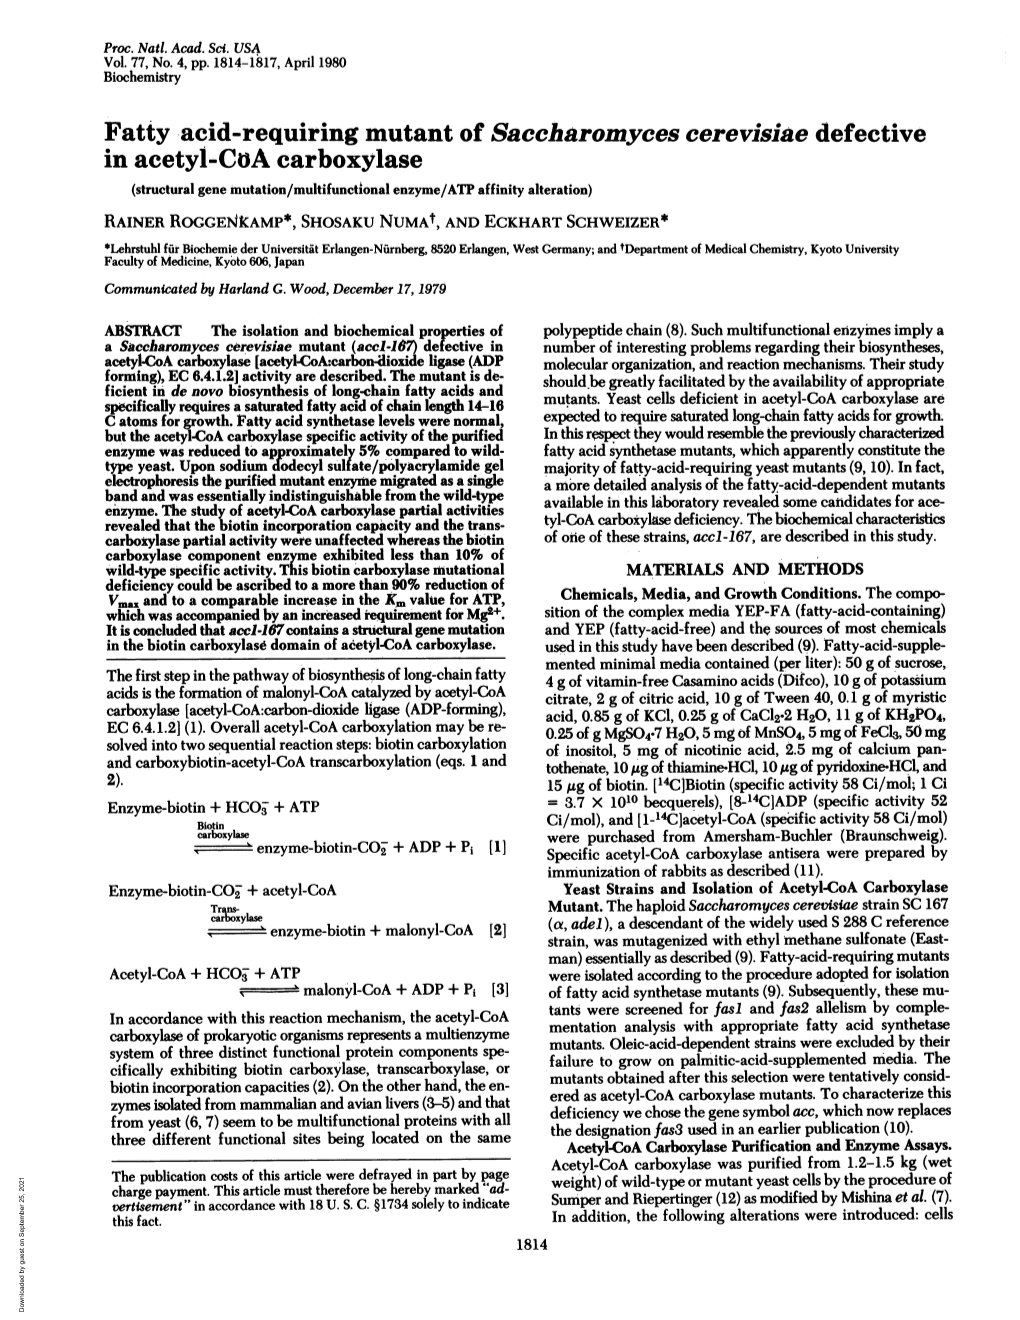 Fatty Acid-Requiring Mutant of Saccharomyces Cerevisiae